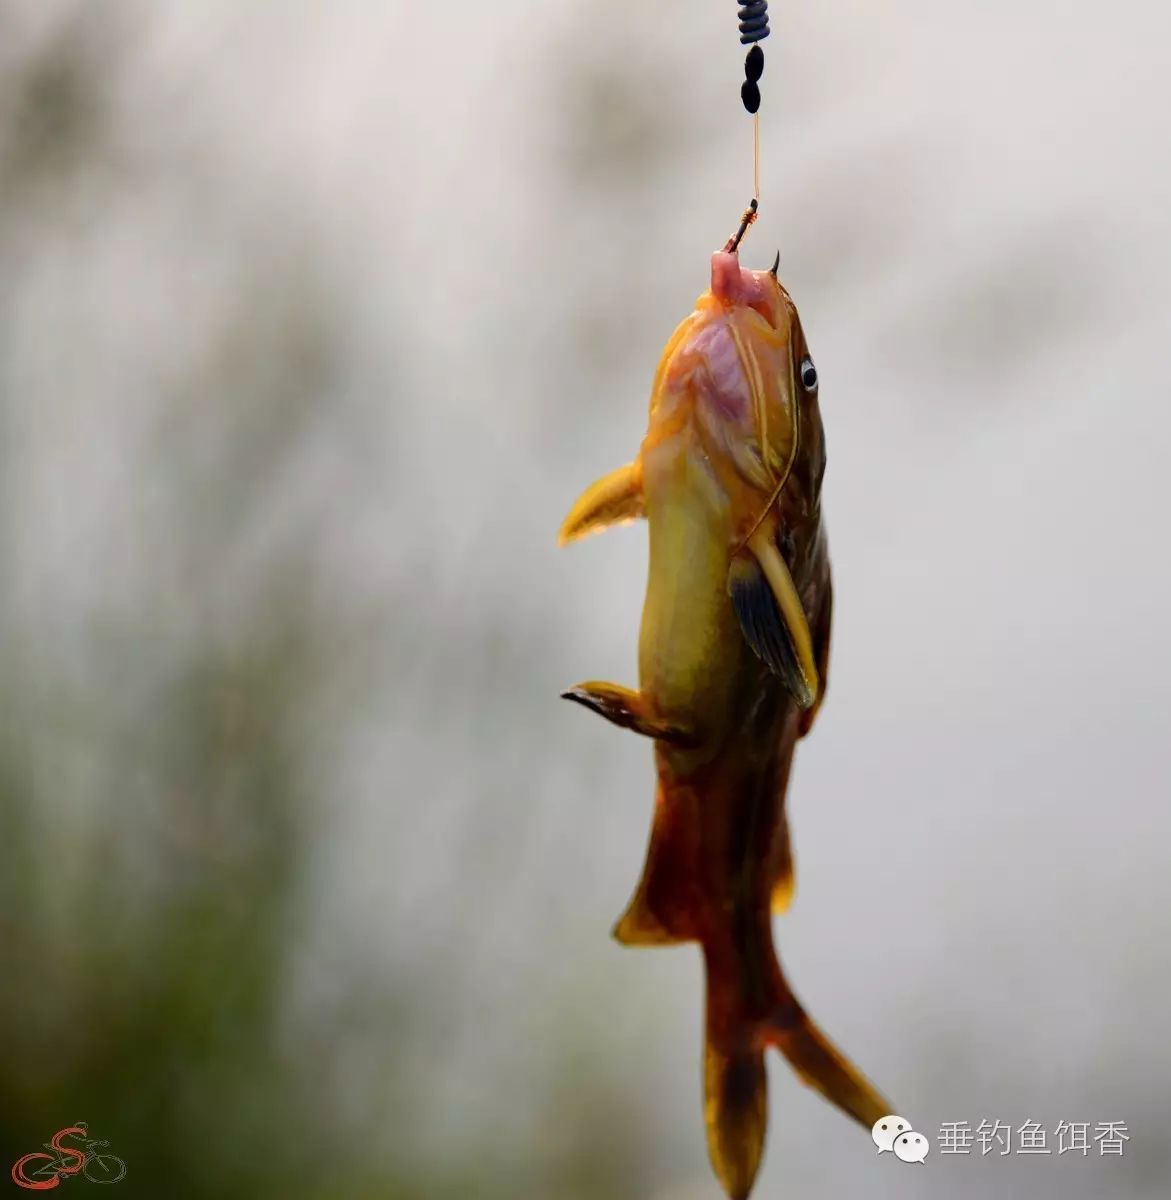 【钓鱼技巧】秋季钓黄颡鱼的多个小窍门分享